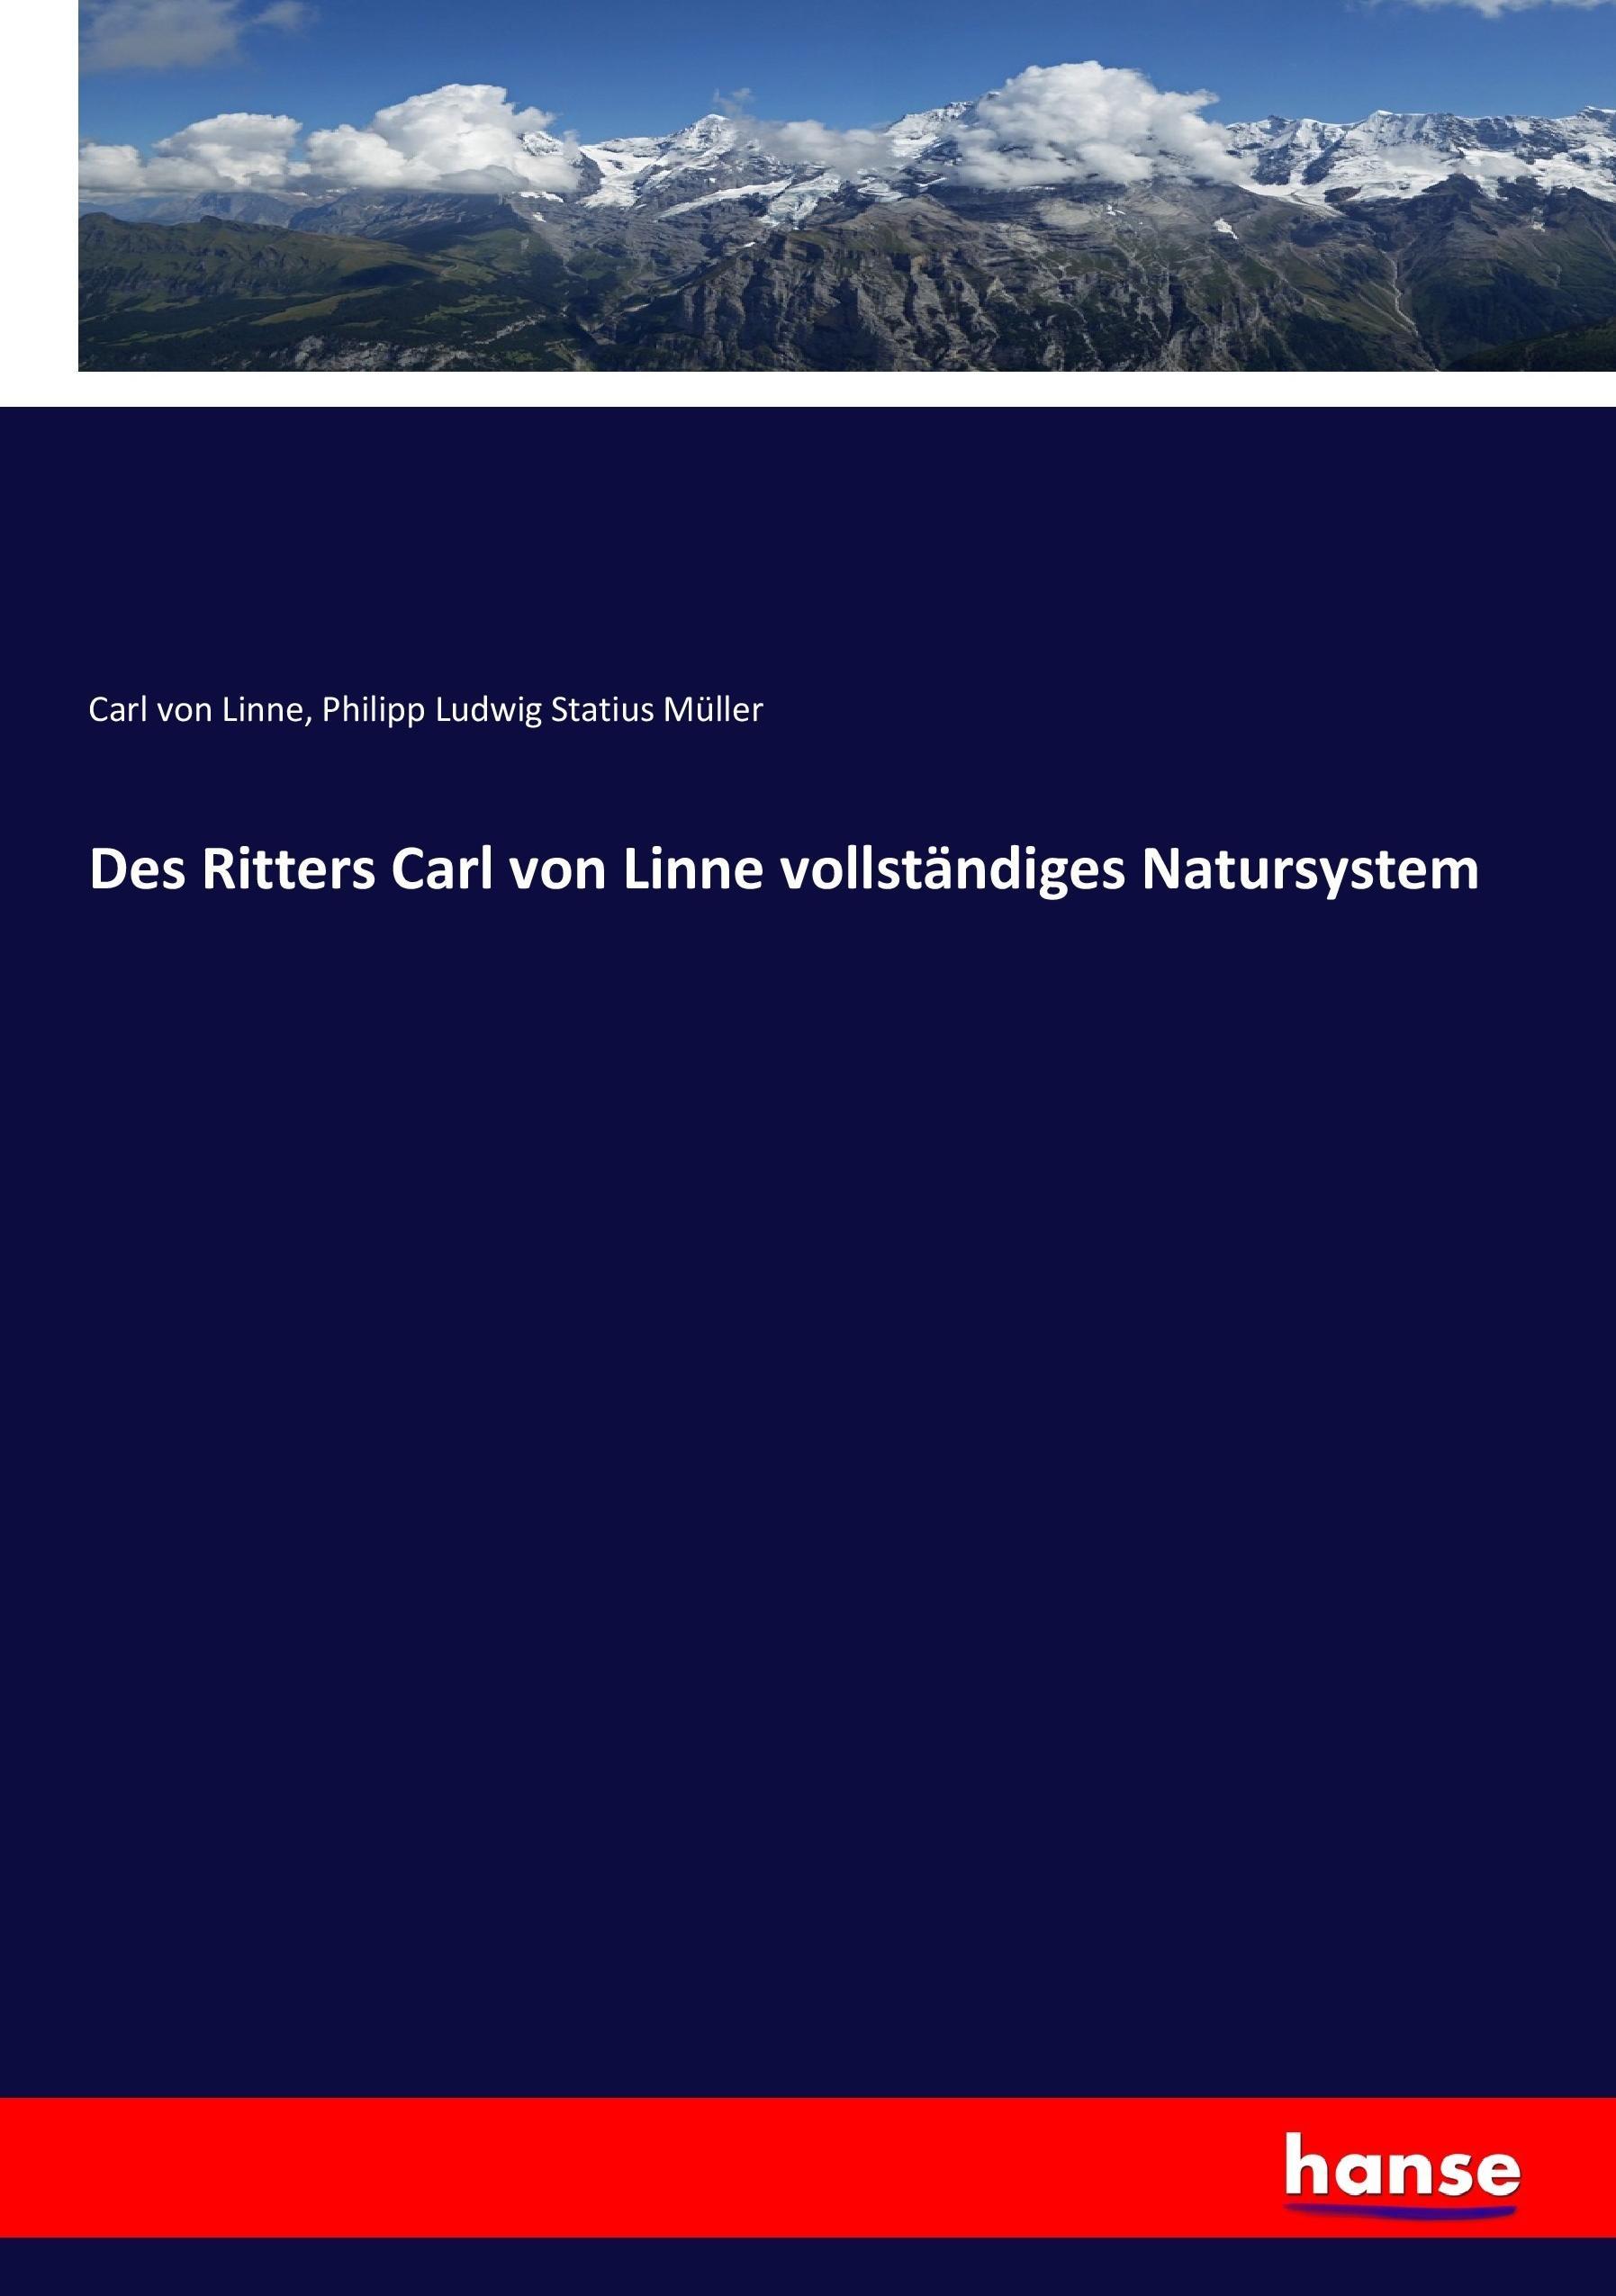 Des Ritters Carl von Linne vollstaendiges Natursystem - Linné, Carl von Mueller, Philipp Ludwig Statius